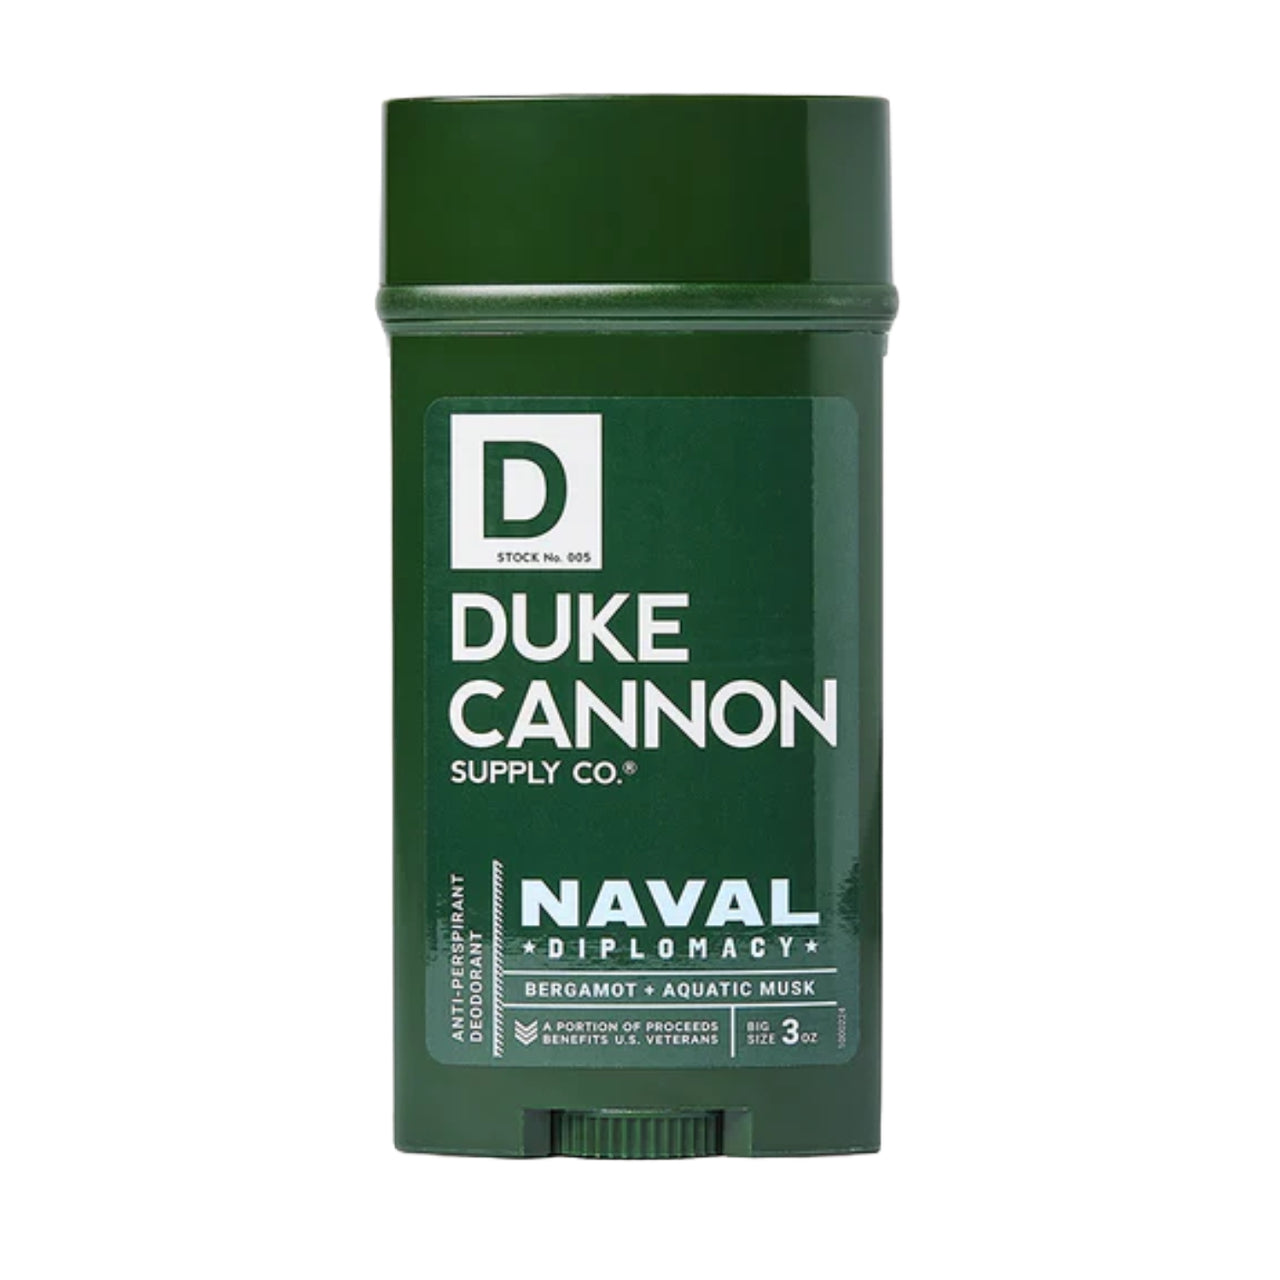 Anti-Perspirant Deodorant | Naval Diplomacy